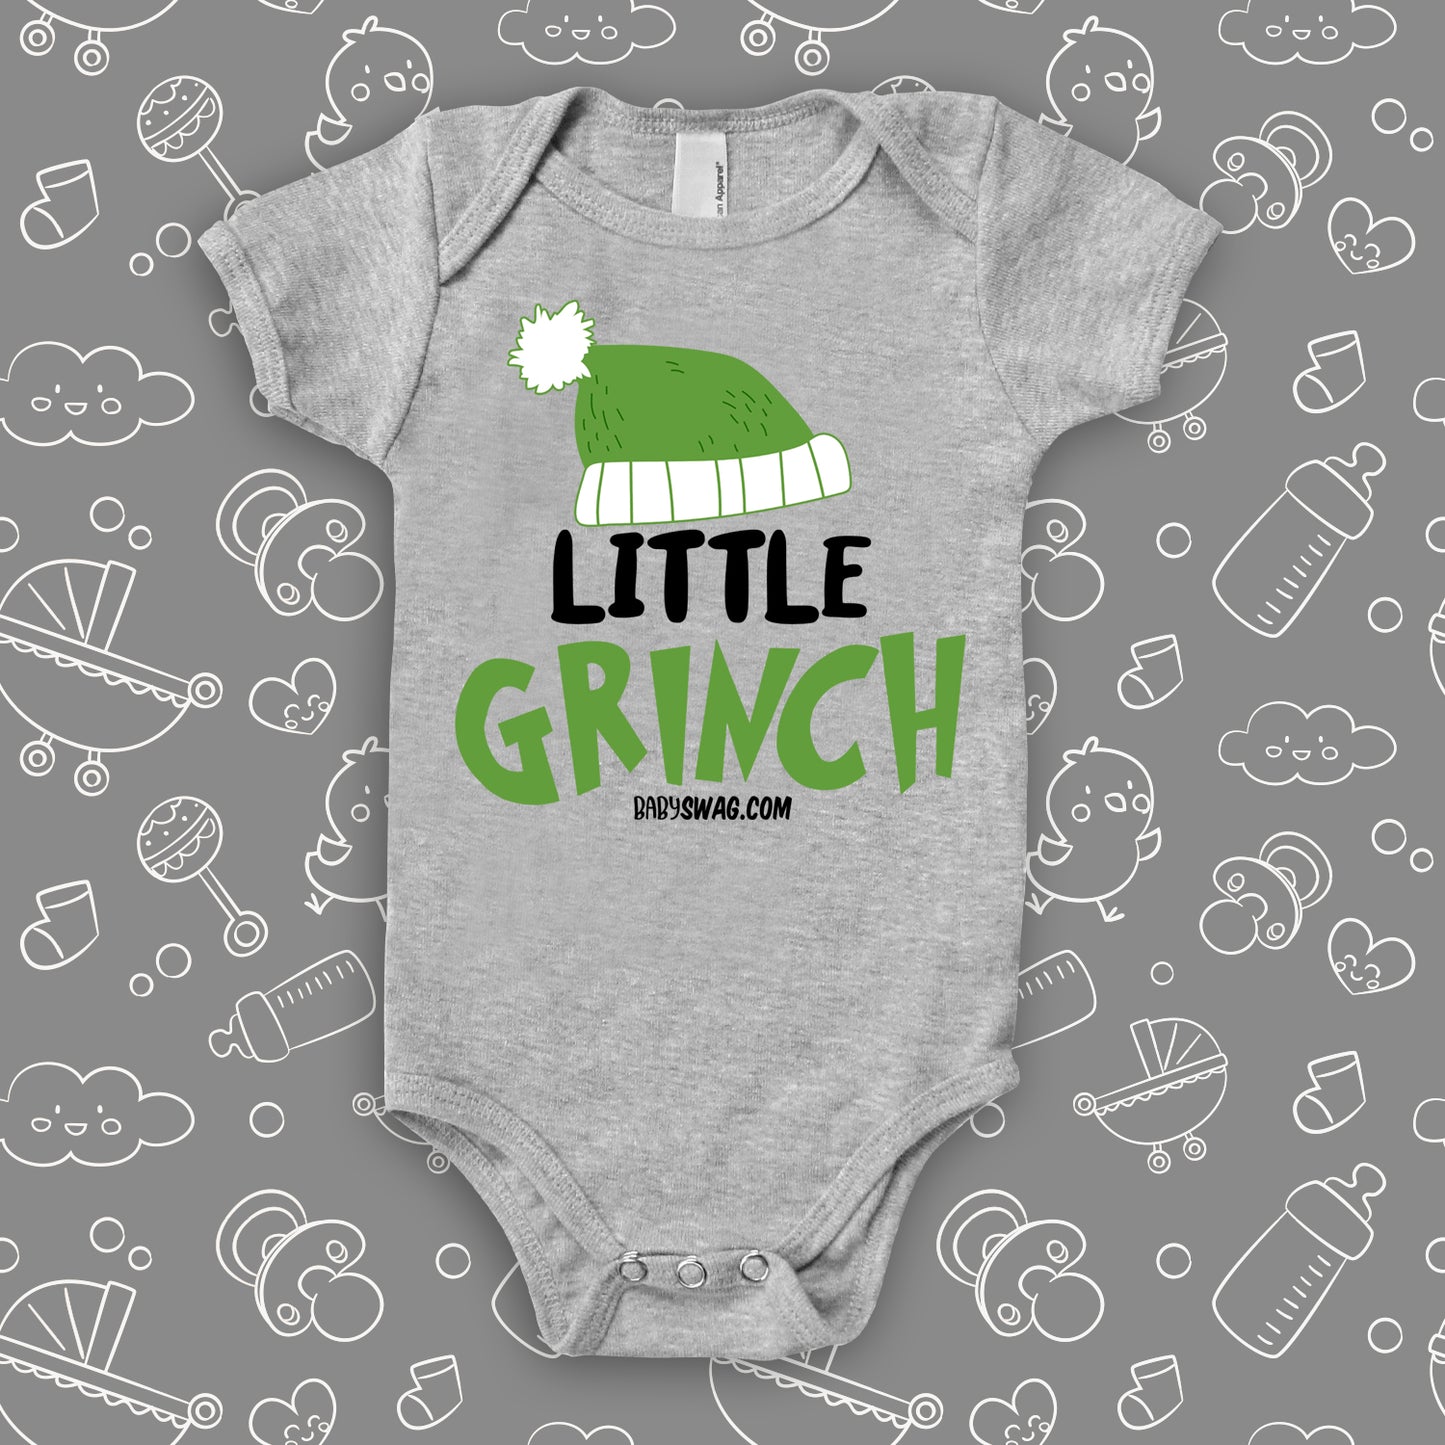 Little Grinch